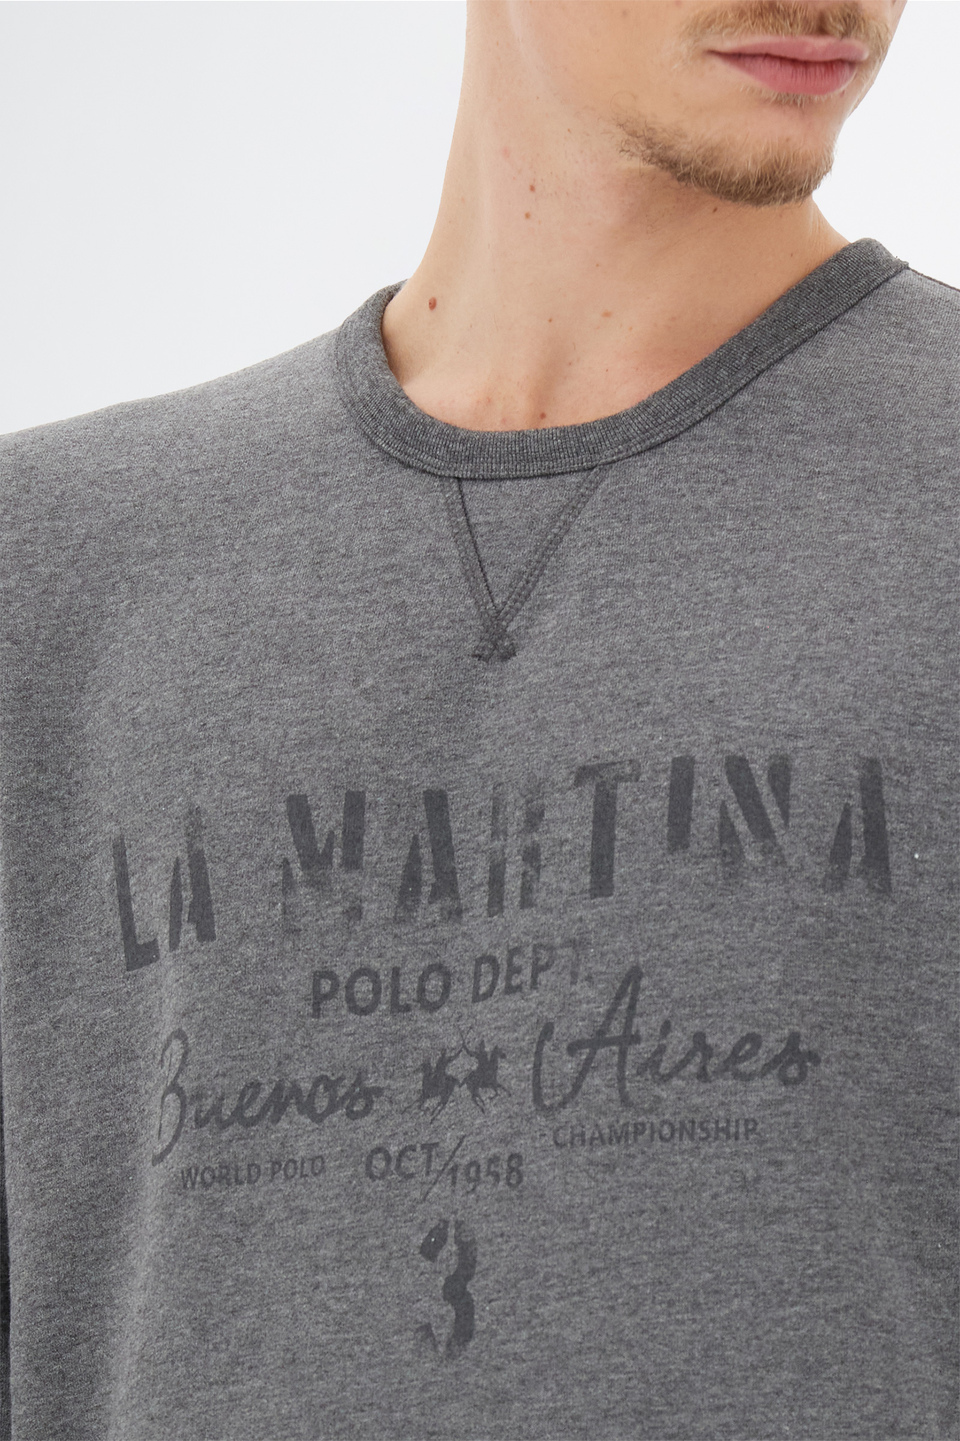 Herren-Sweatshirt Leyendas Del Polo mit langen Ärmeln aus Fleece-Baumwolle | La Martina - Official Online Shop